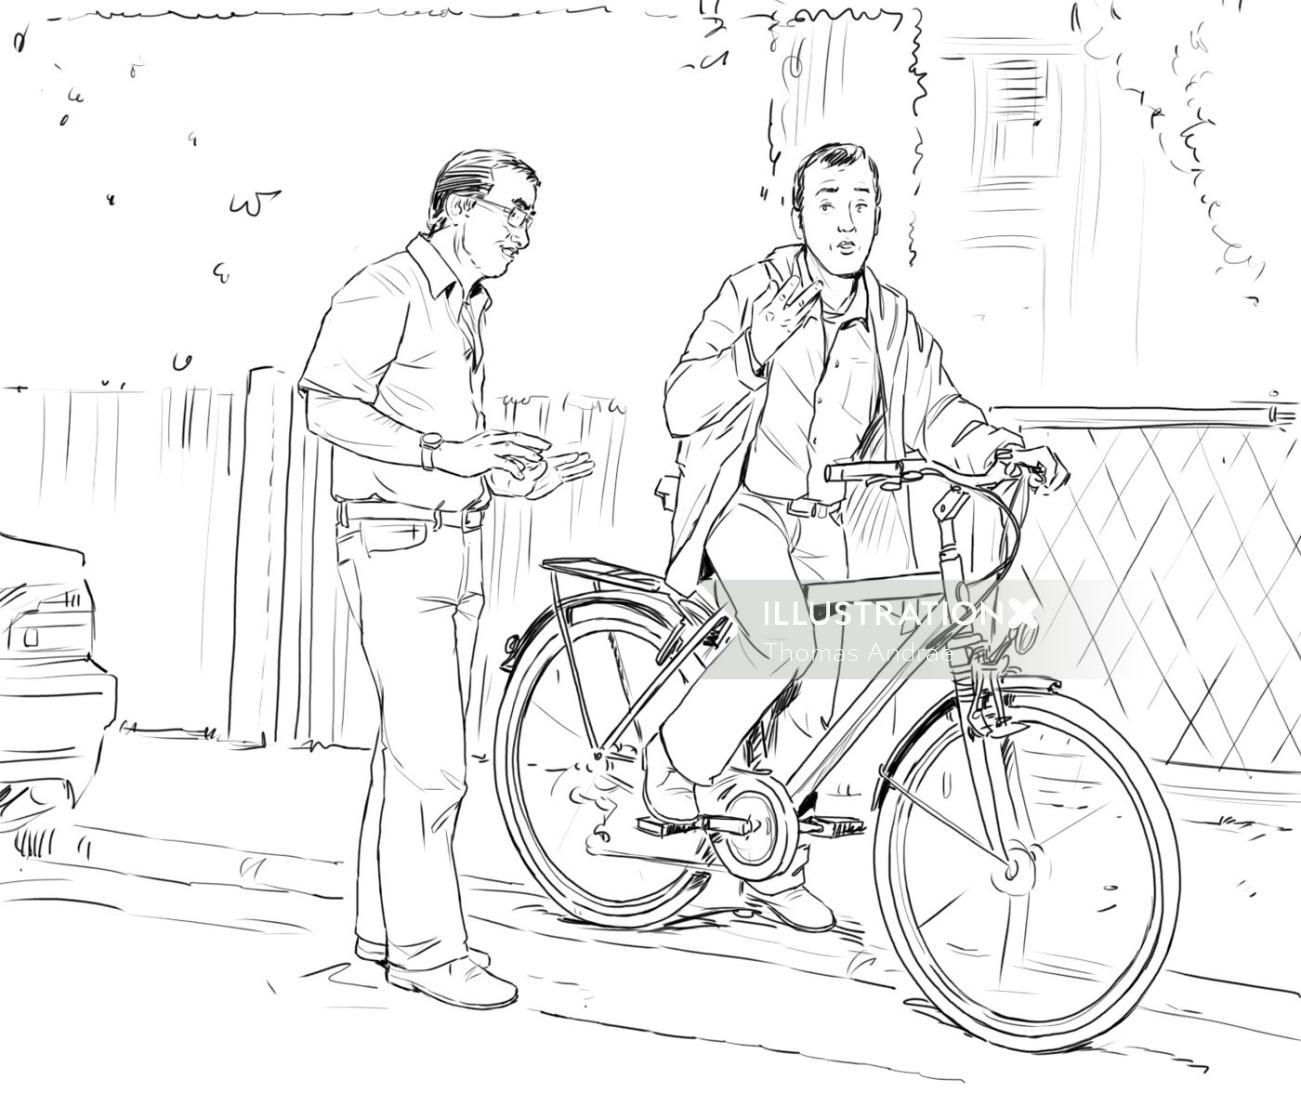 道路上の人々、自転車に座っている男